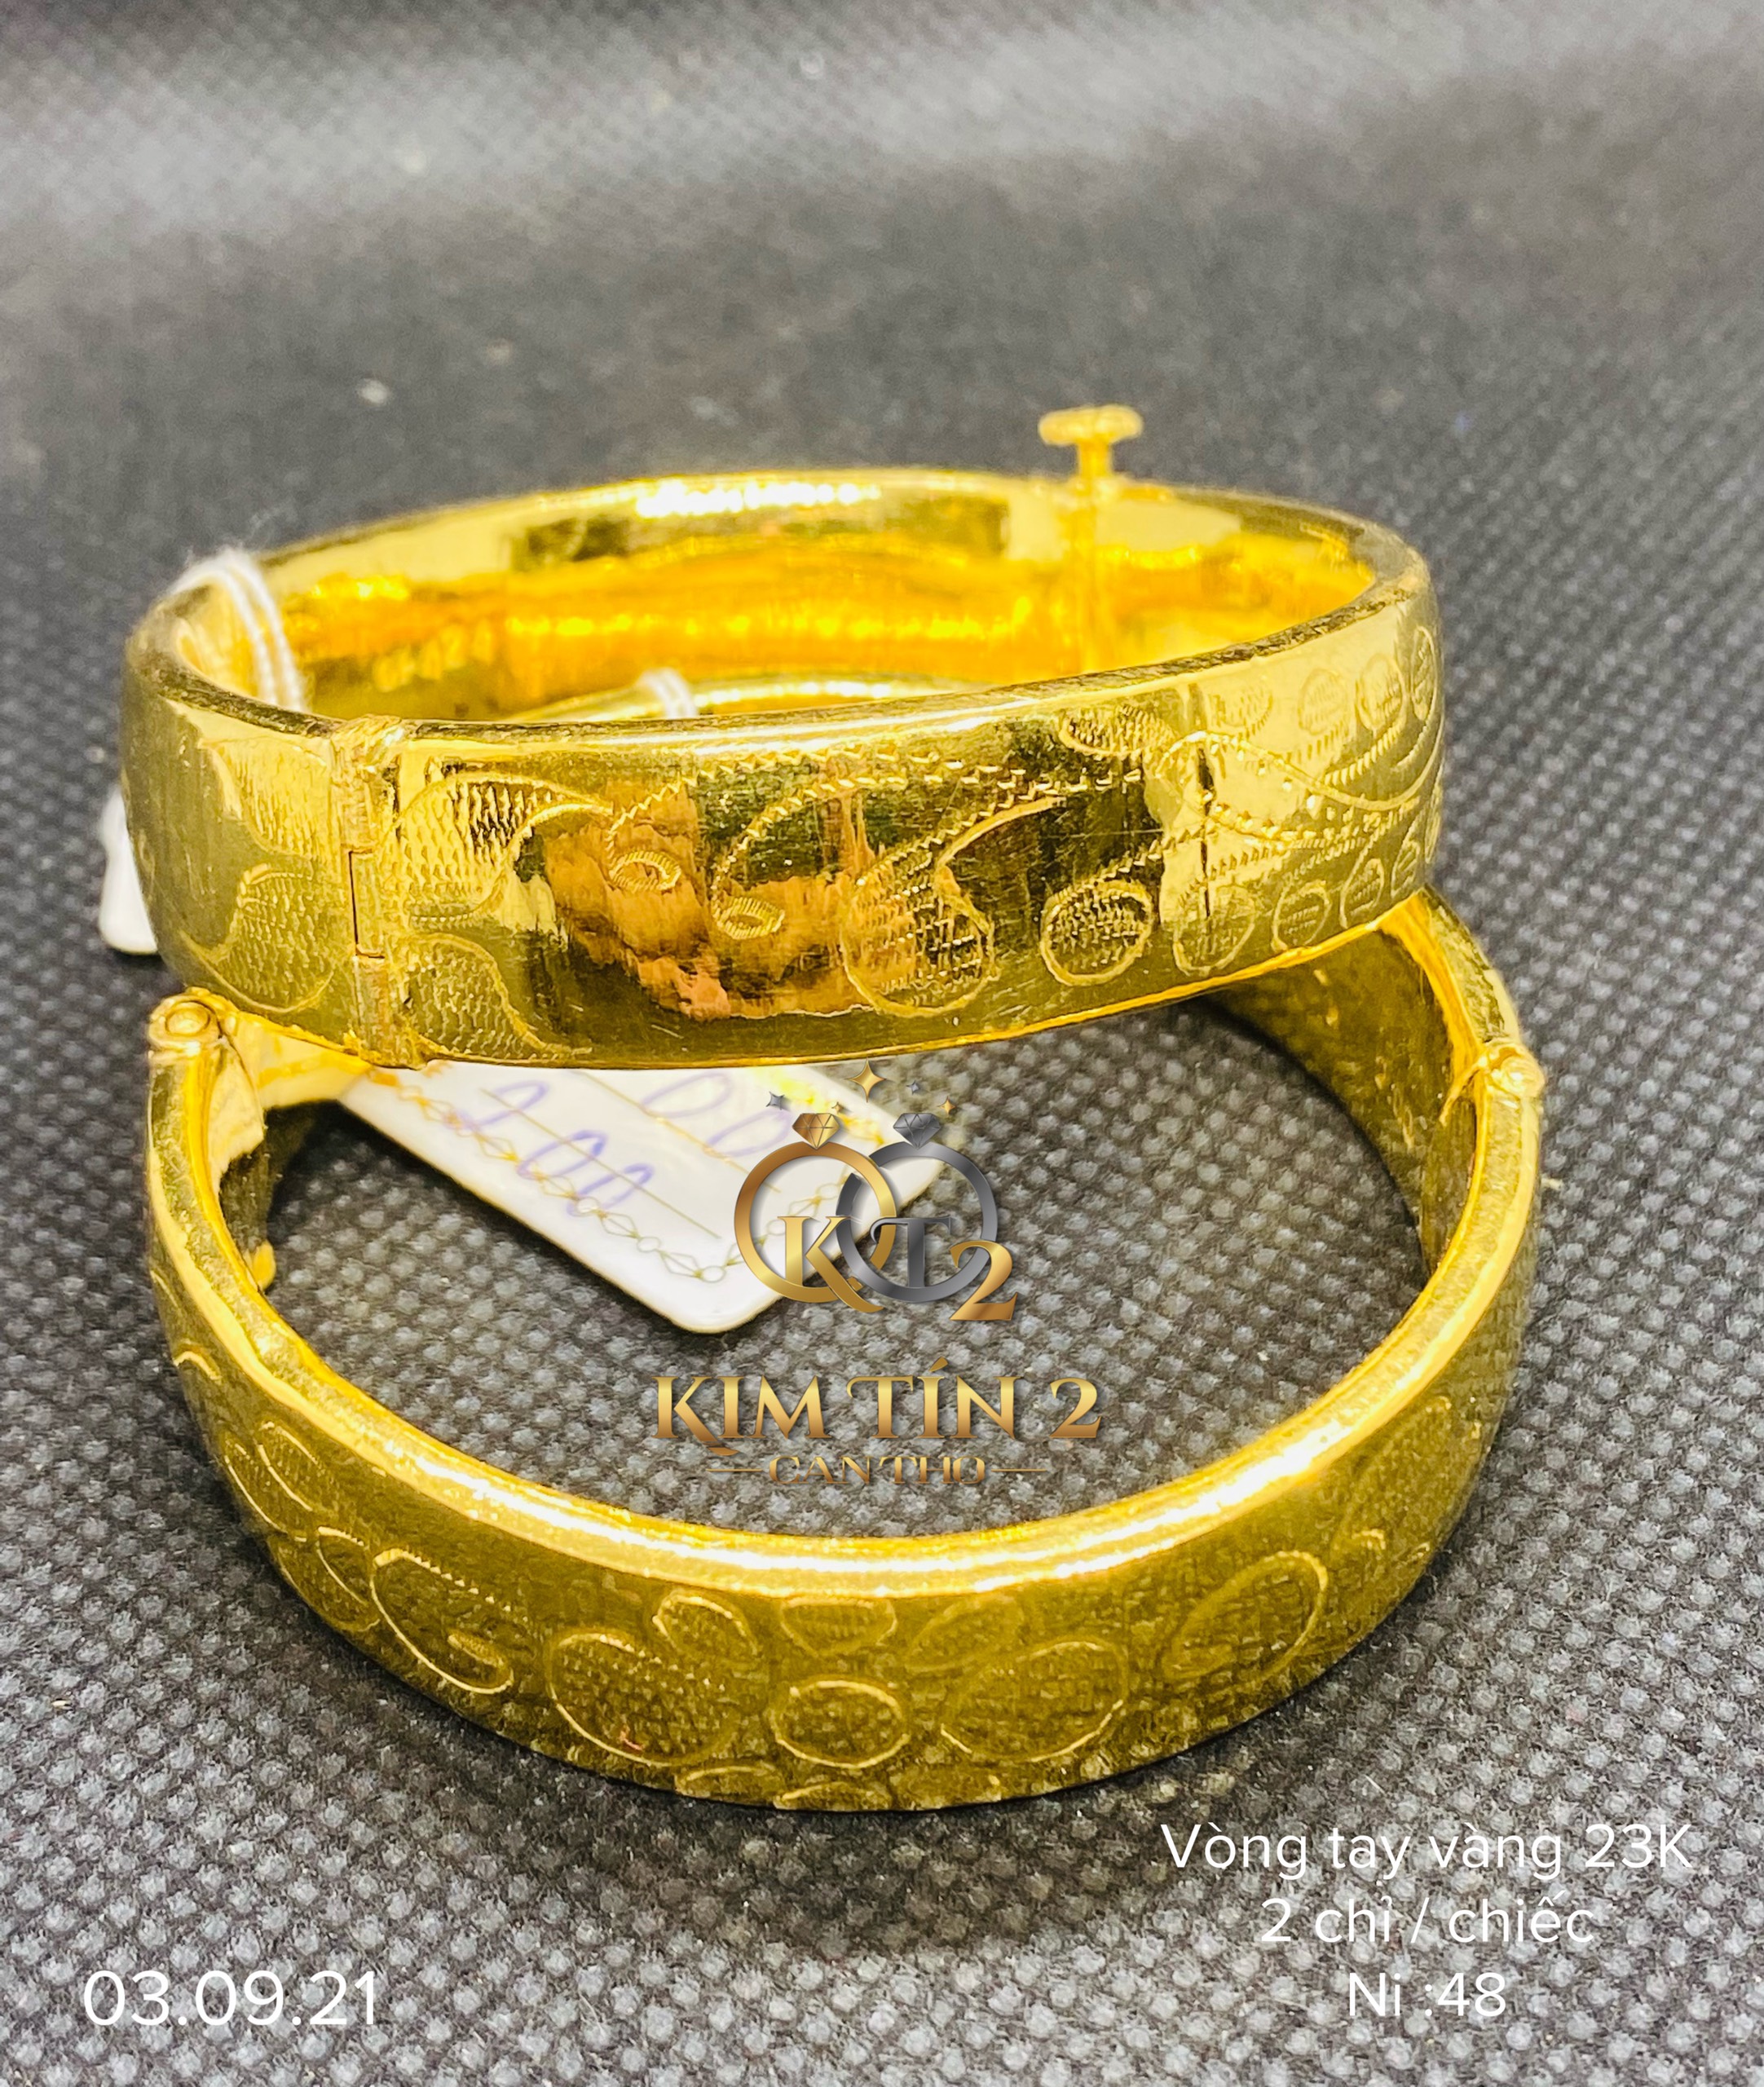 Khám phá mẫu vòng tay nam vàng 24k mới nhất 2024 tại tiệm vàng Kim Tín. Được chế tác từ vàng 24k cao cấp và được đính kèm 2 chỉ vàng, chiếc vòng tay này sẽ đem lại phong cách sang trọng và lịch lãm cho các quý ông.